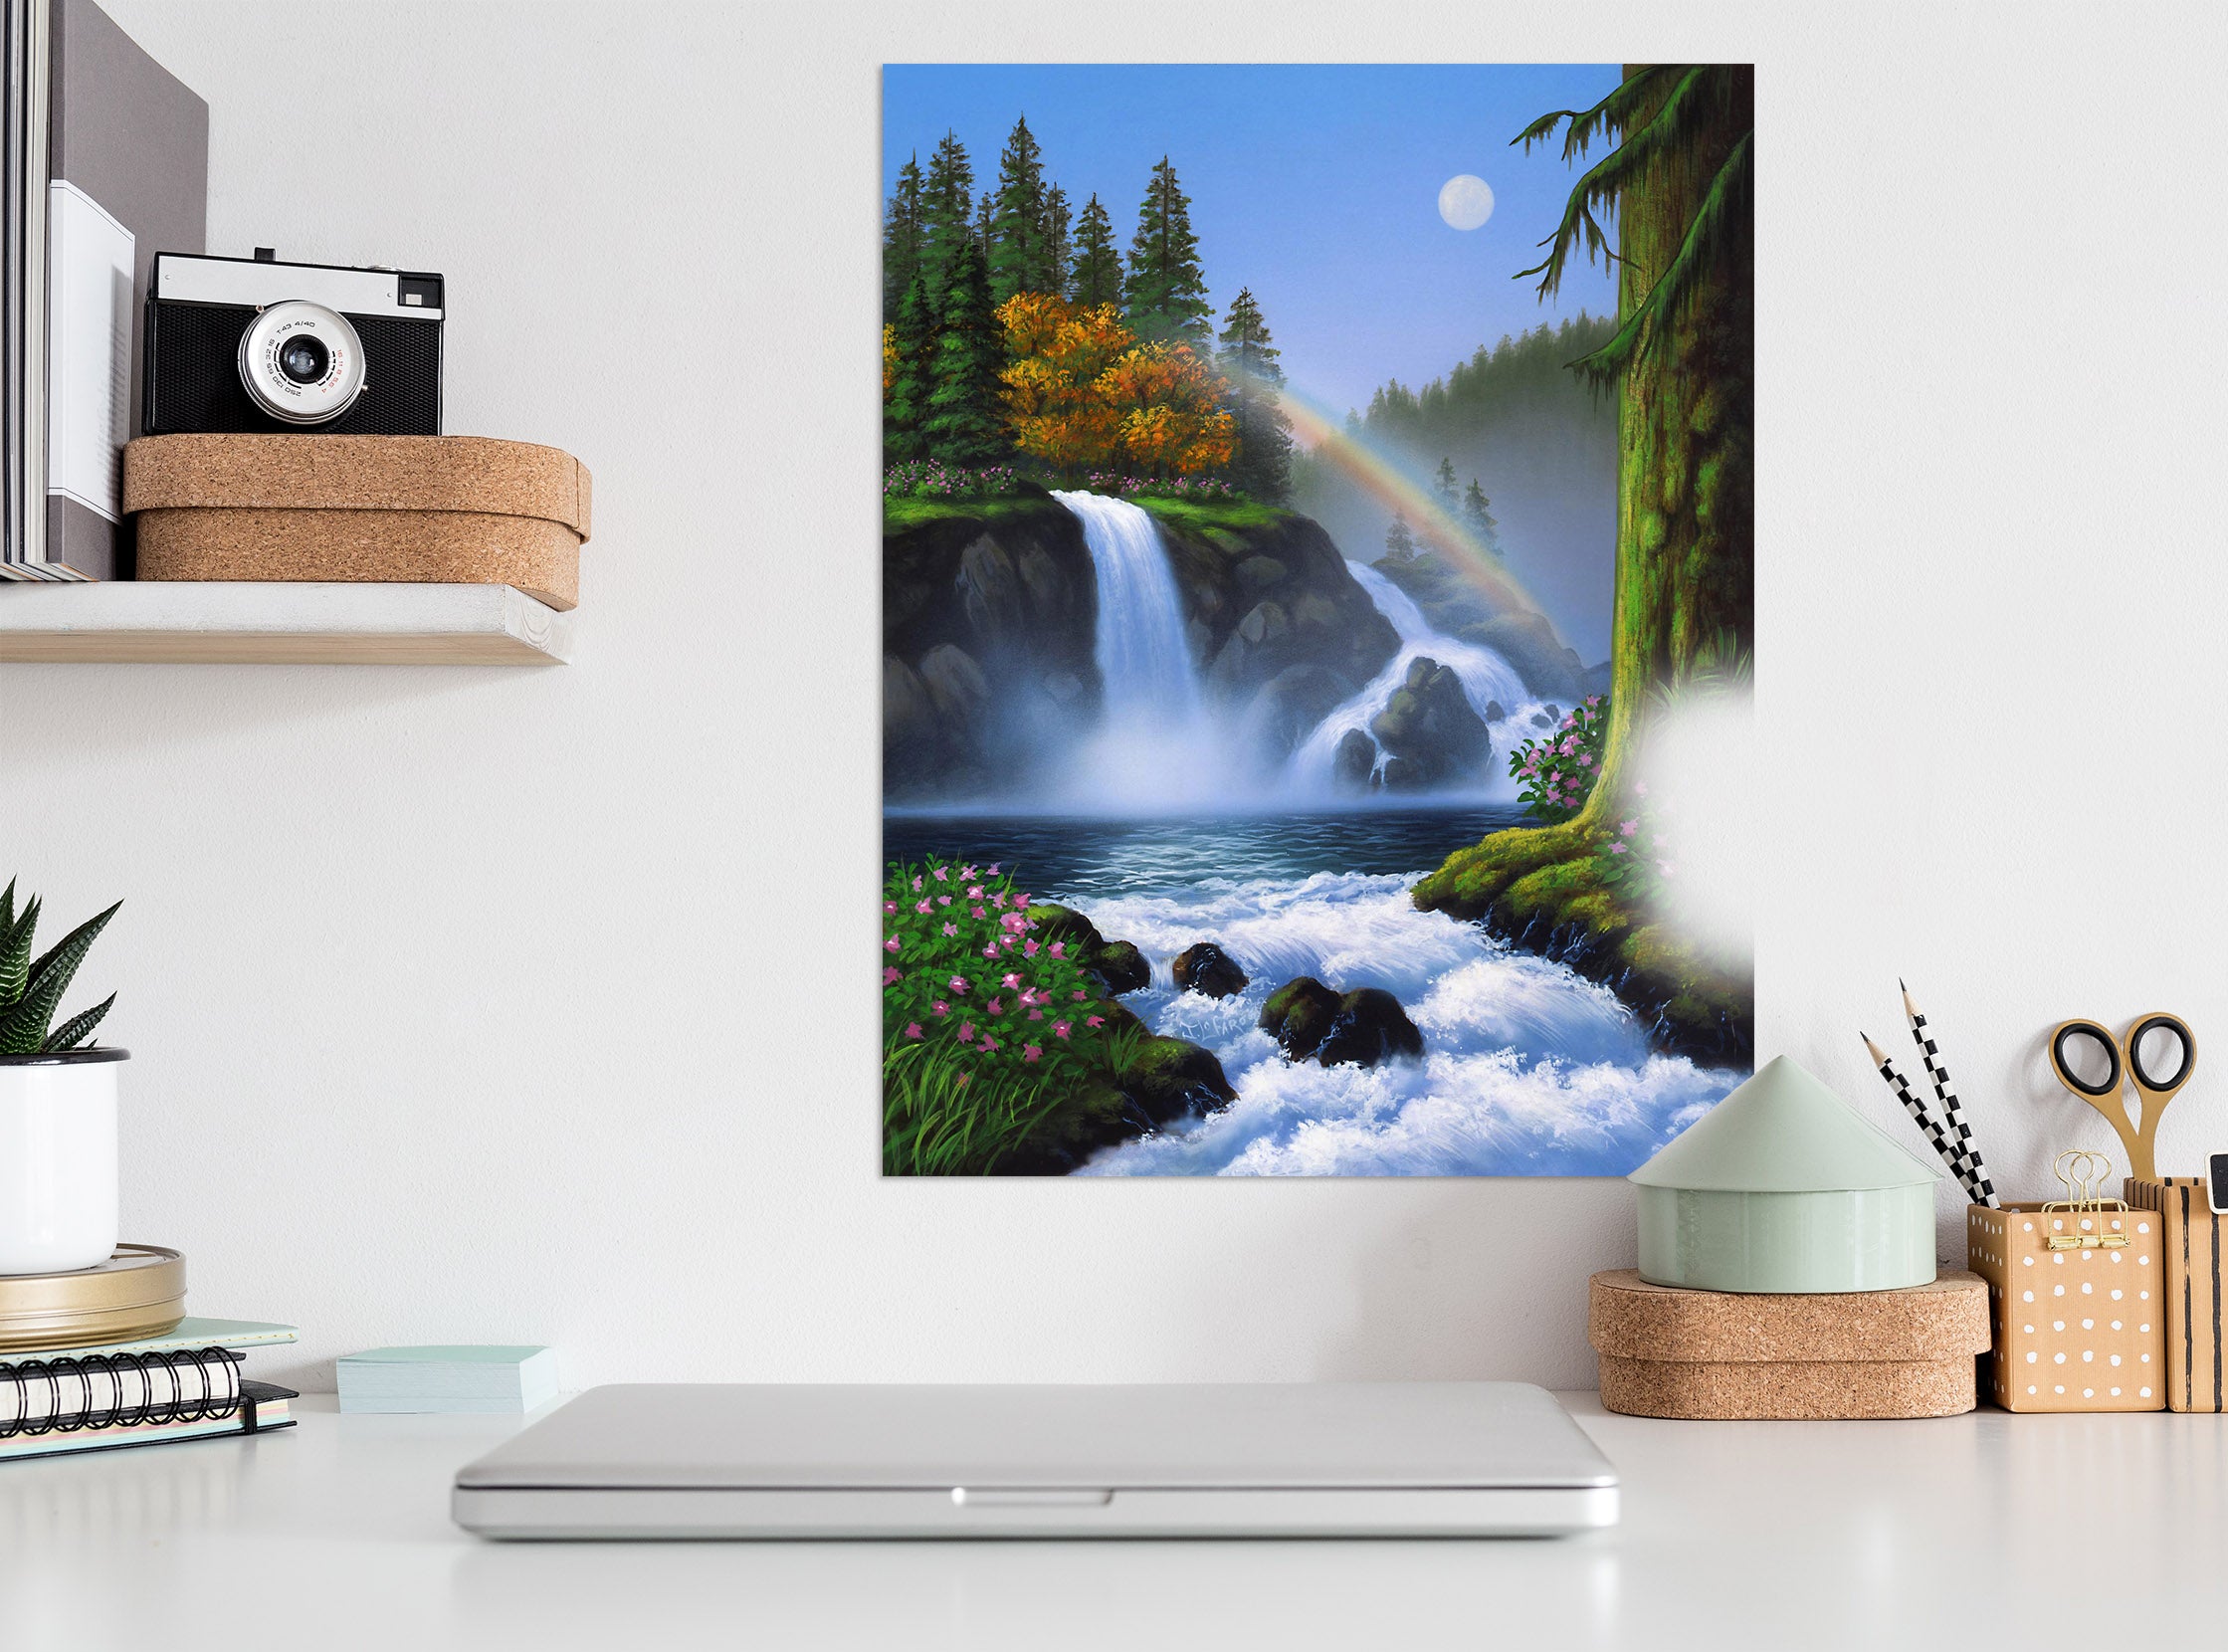 3D Waterfall 038 Jerry LoFaro Wall Sticker